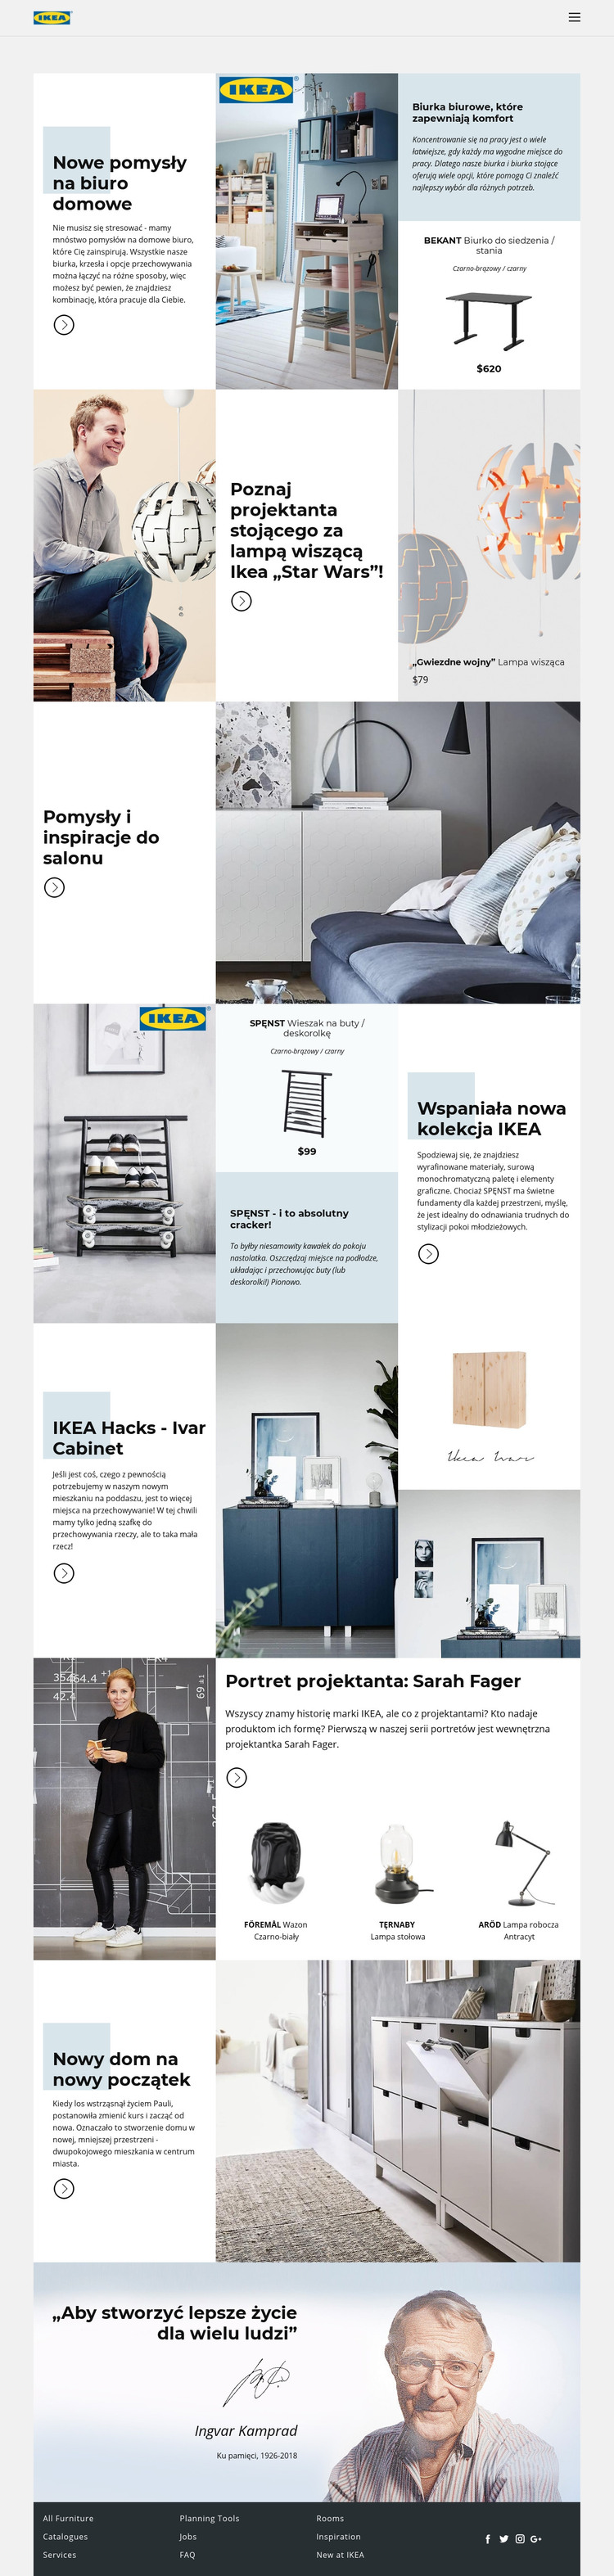 Inspiracja z IKEA Szablon HTML